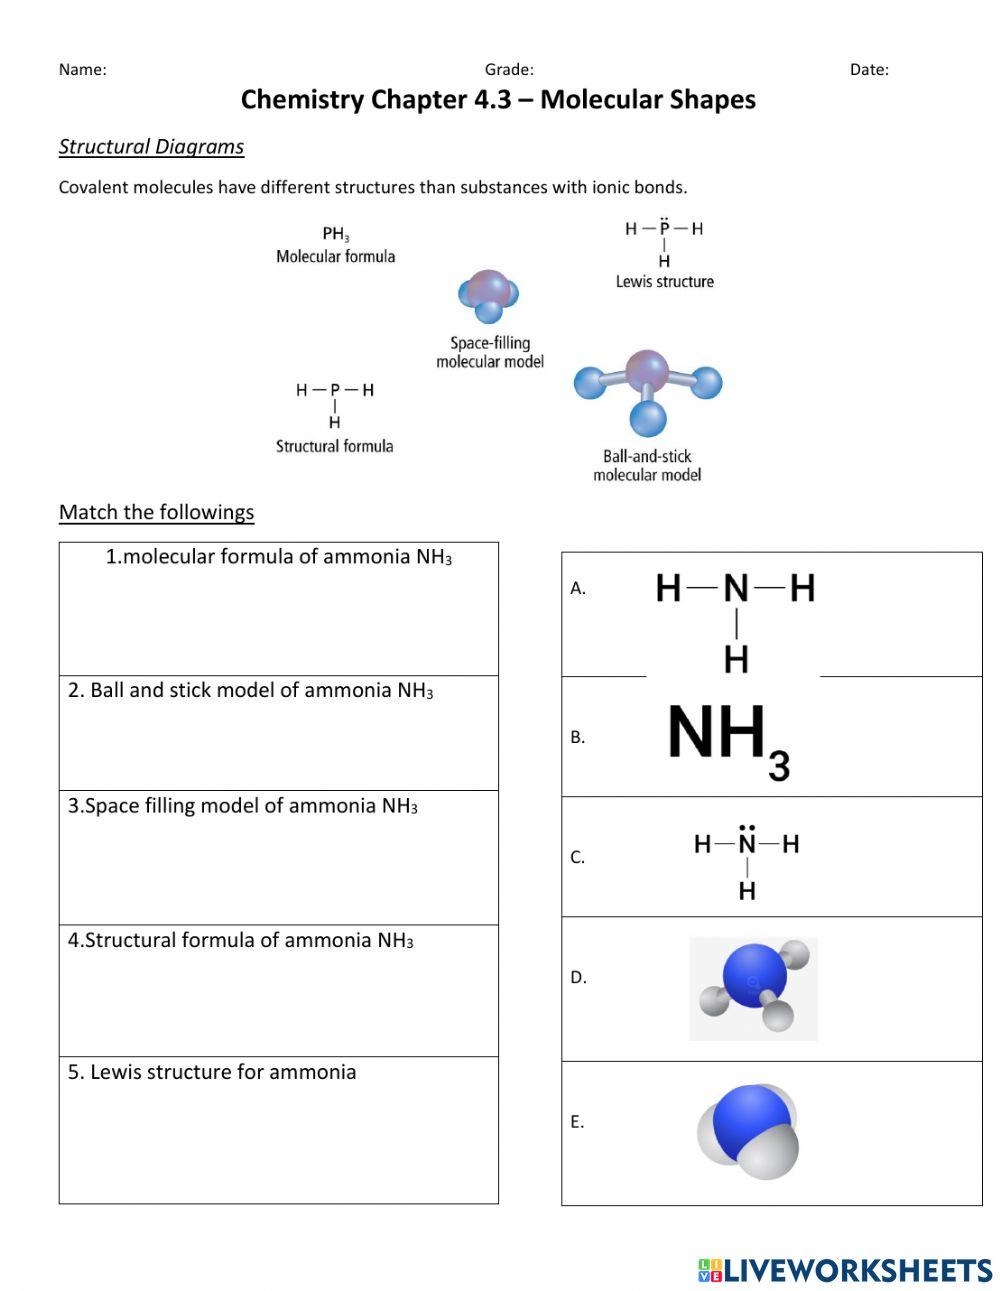 Molecular models